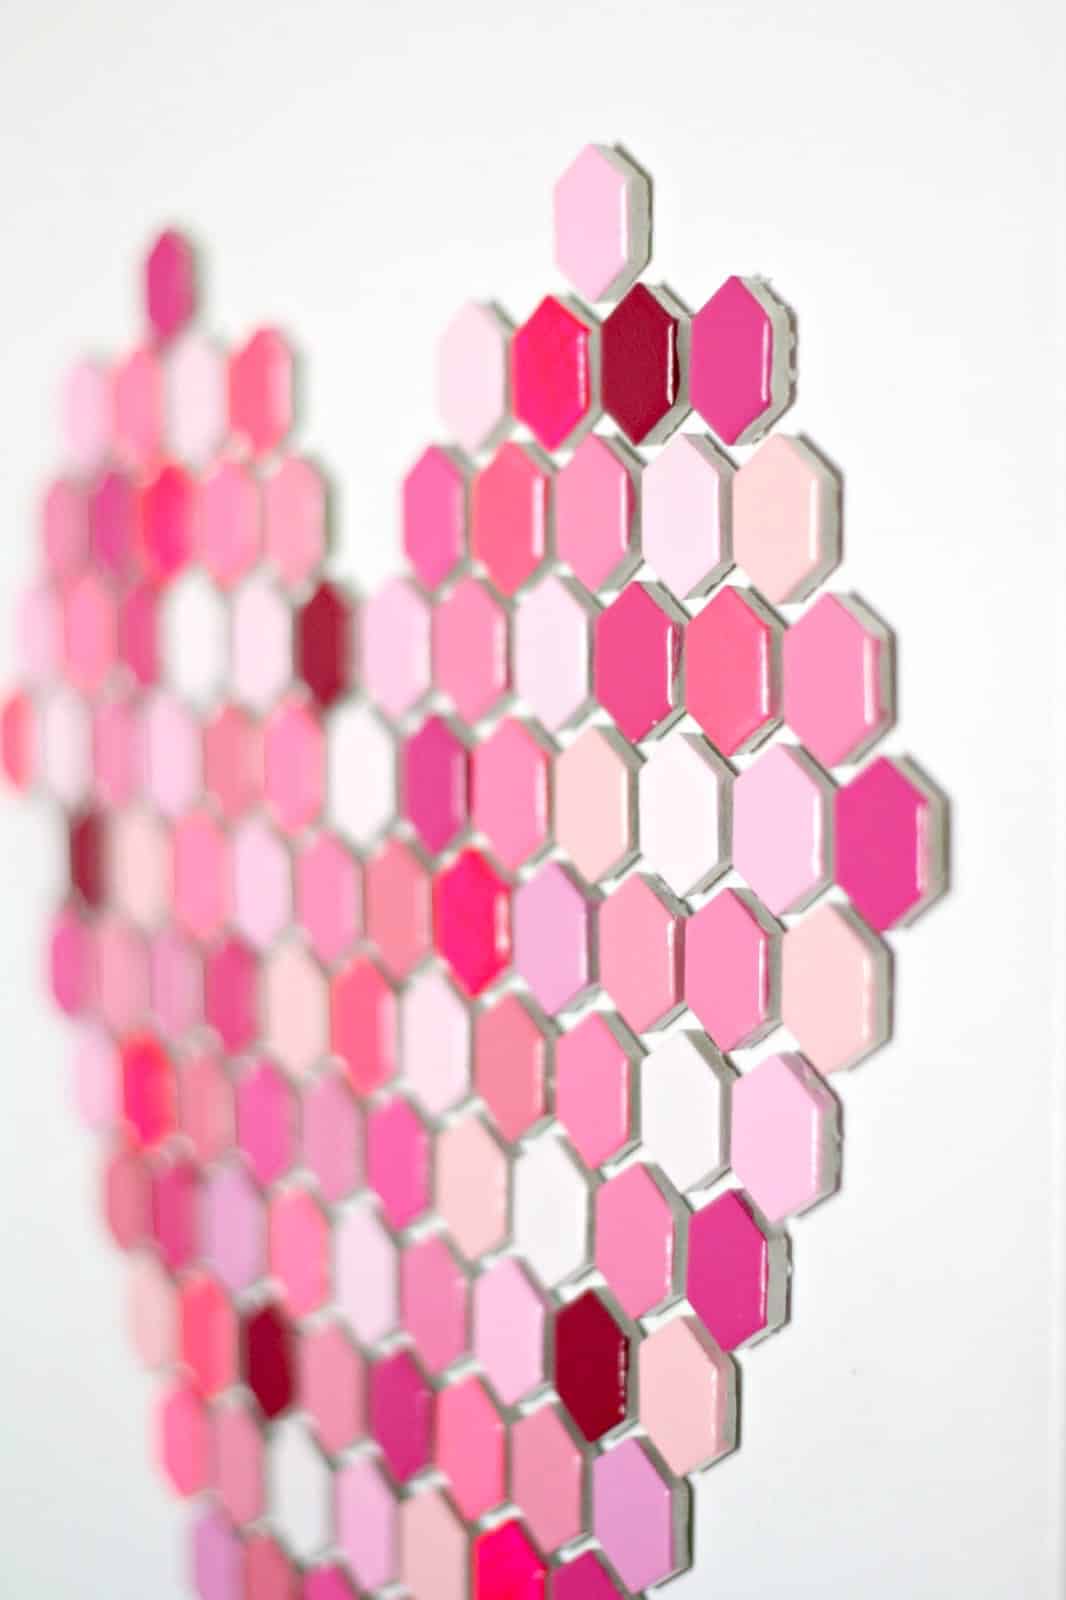 DIY hexagon tile art shaped like a heart